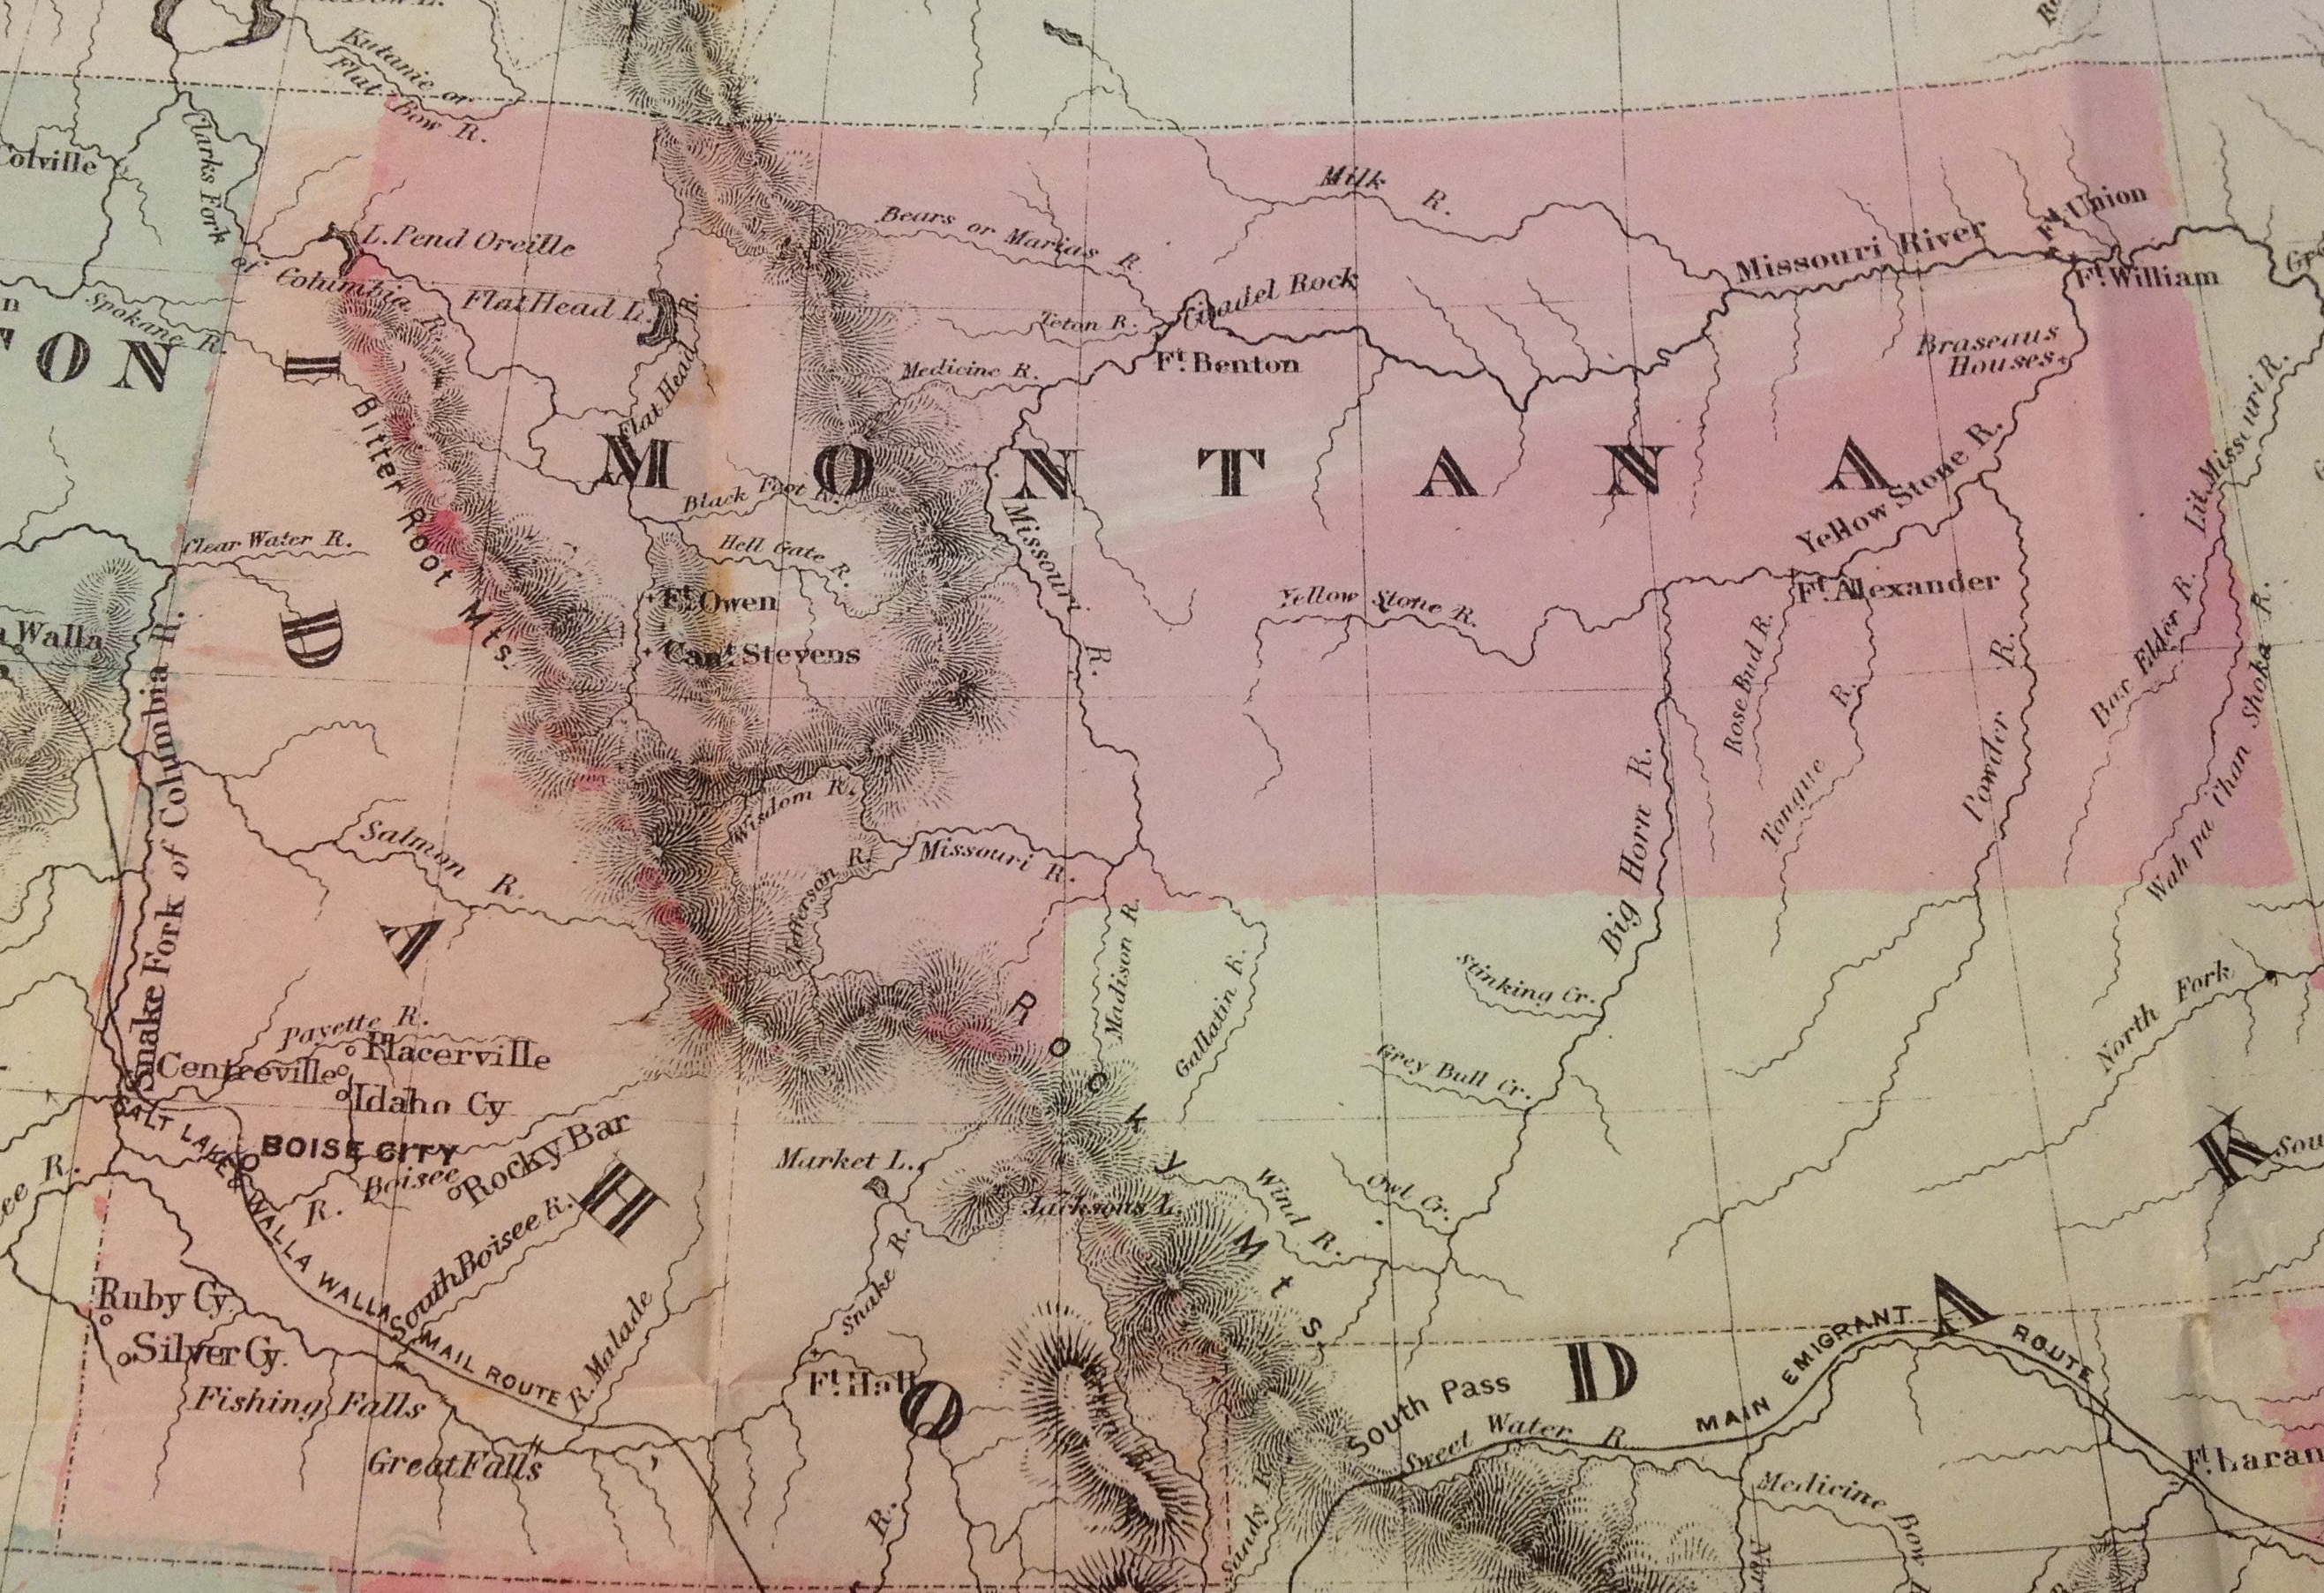 Idaho and Montana territory map, 1865.